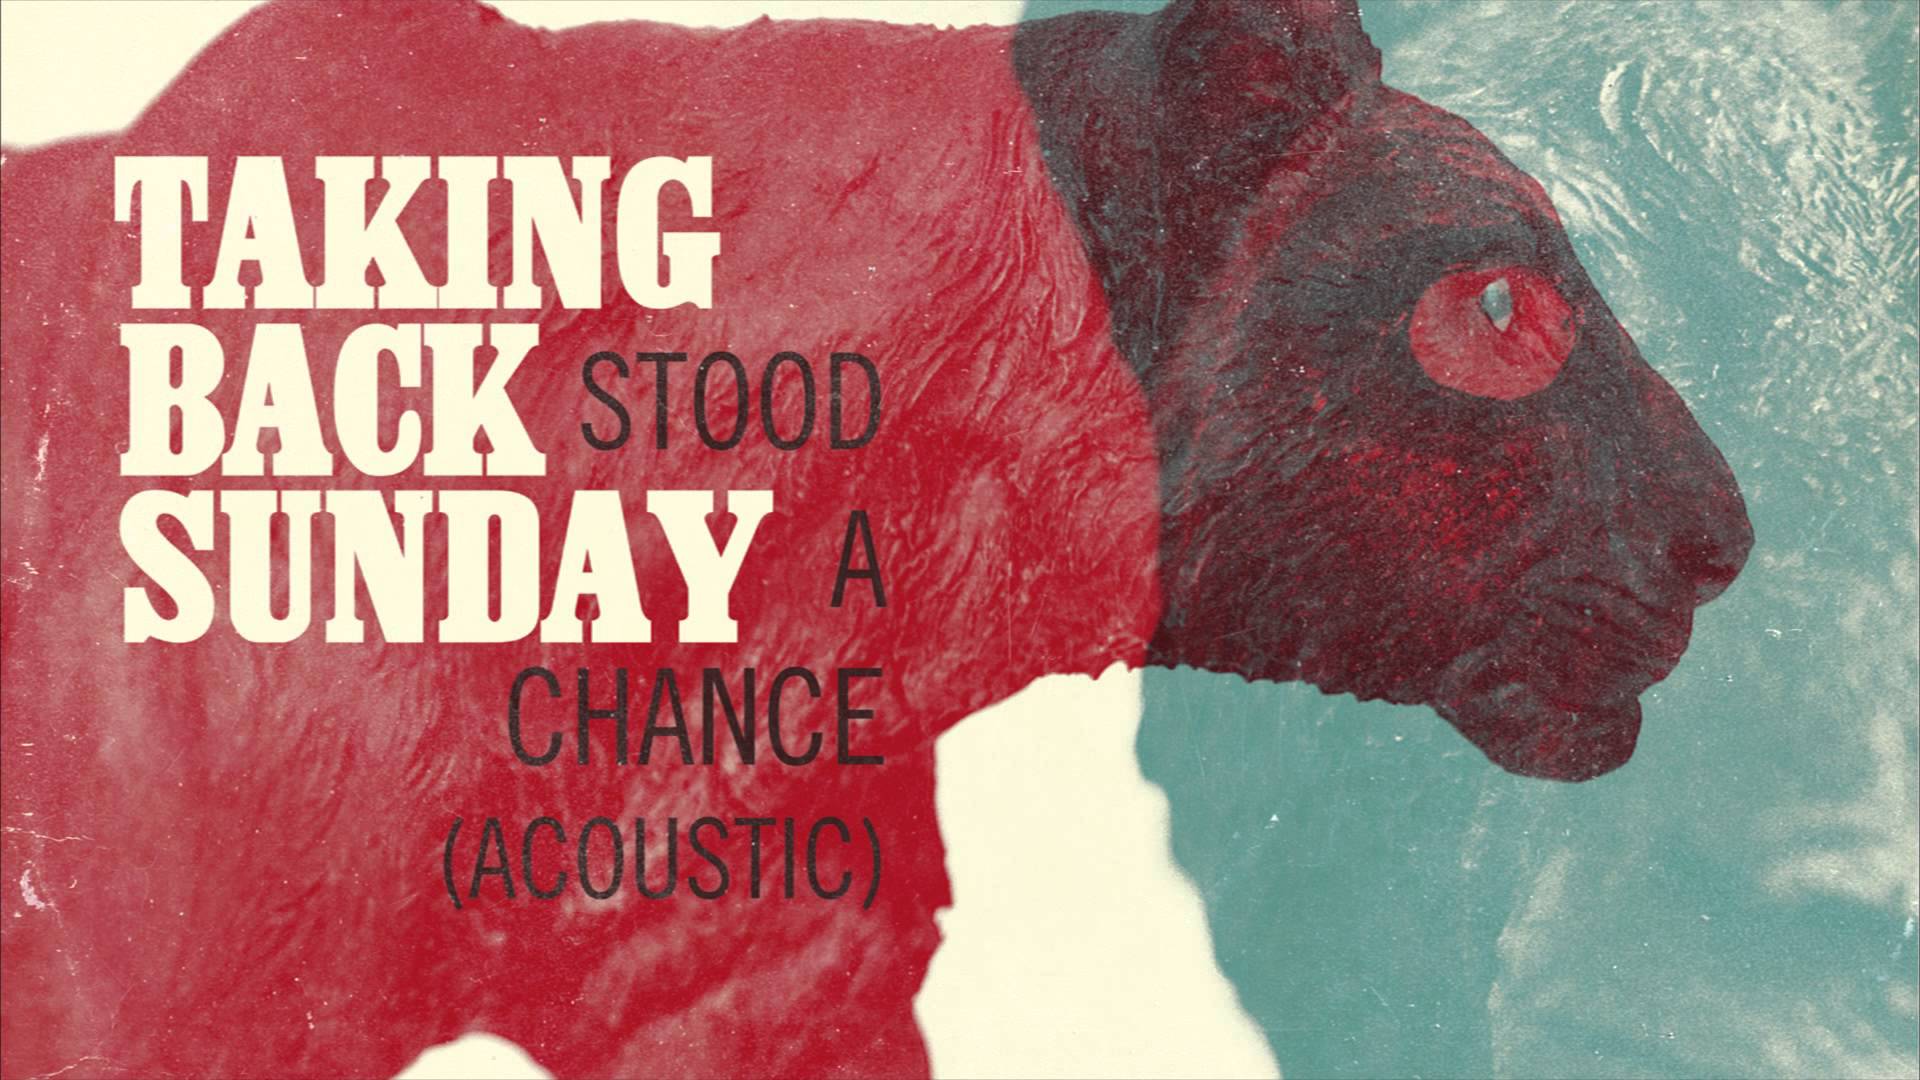 Taking Back Sunday - Stood A Chance Acoustic - YouTube